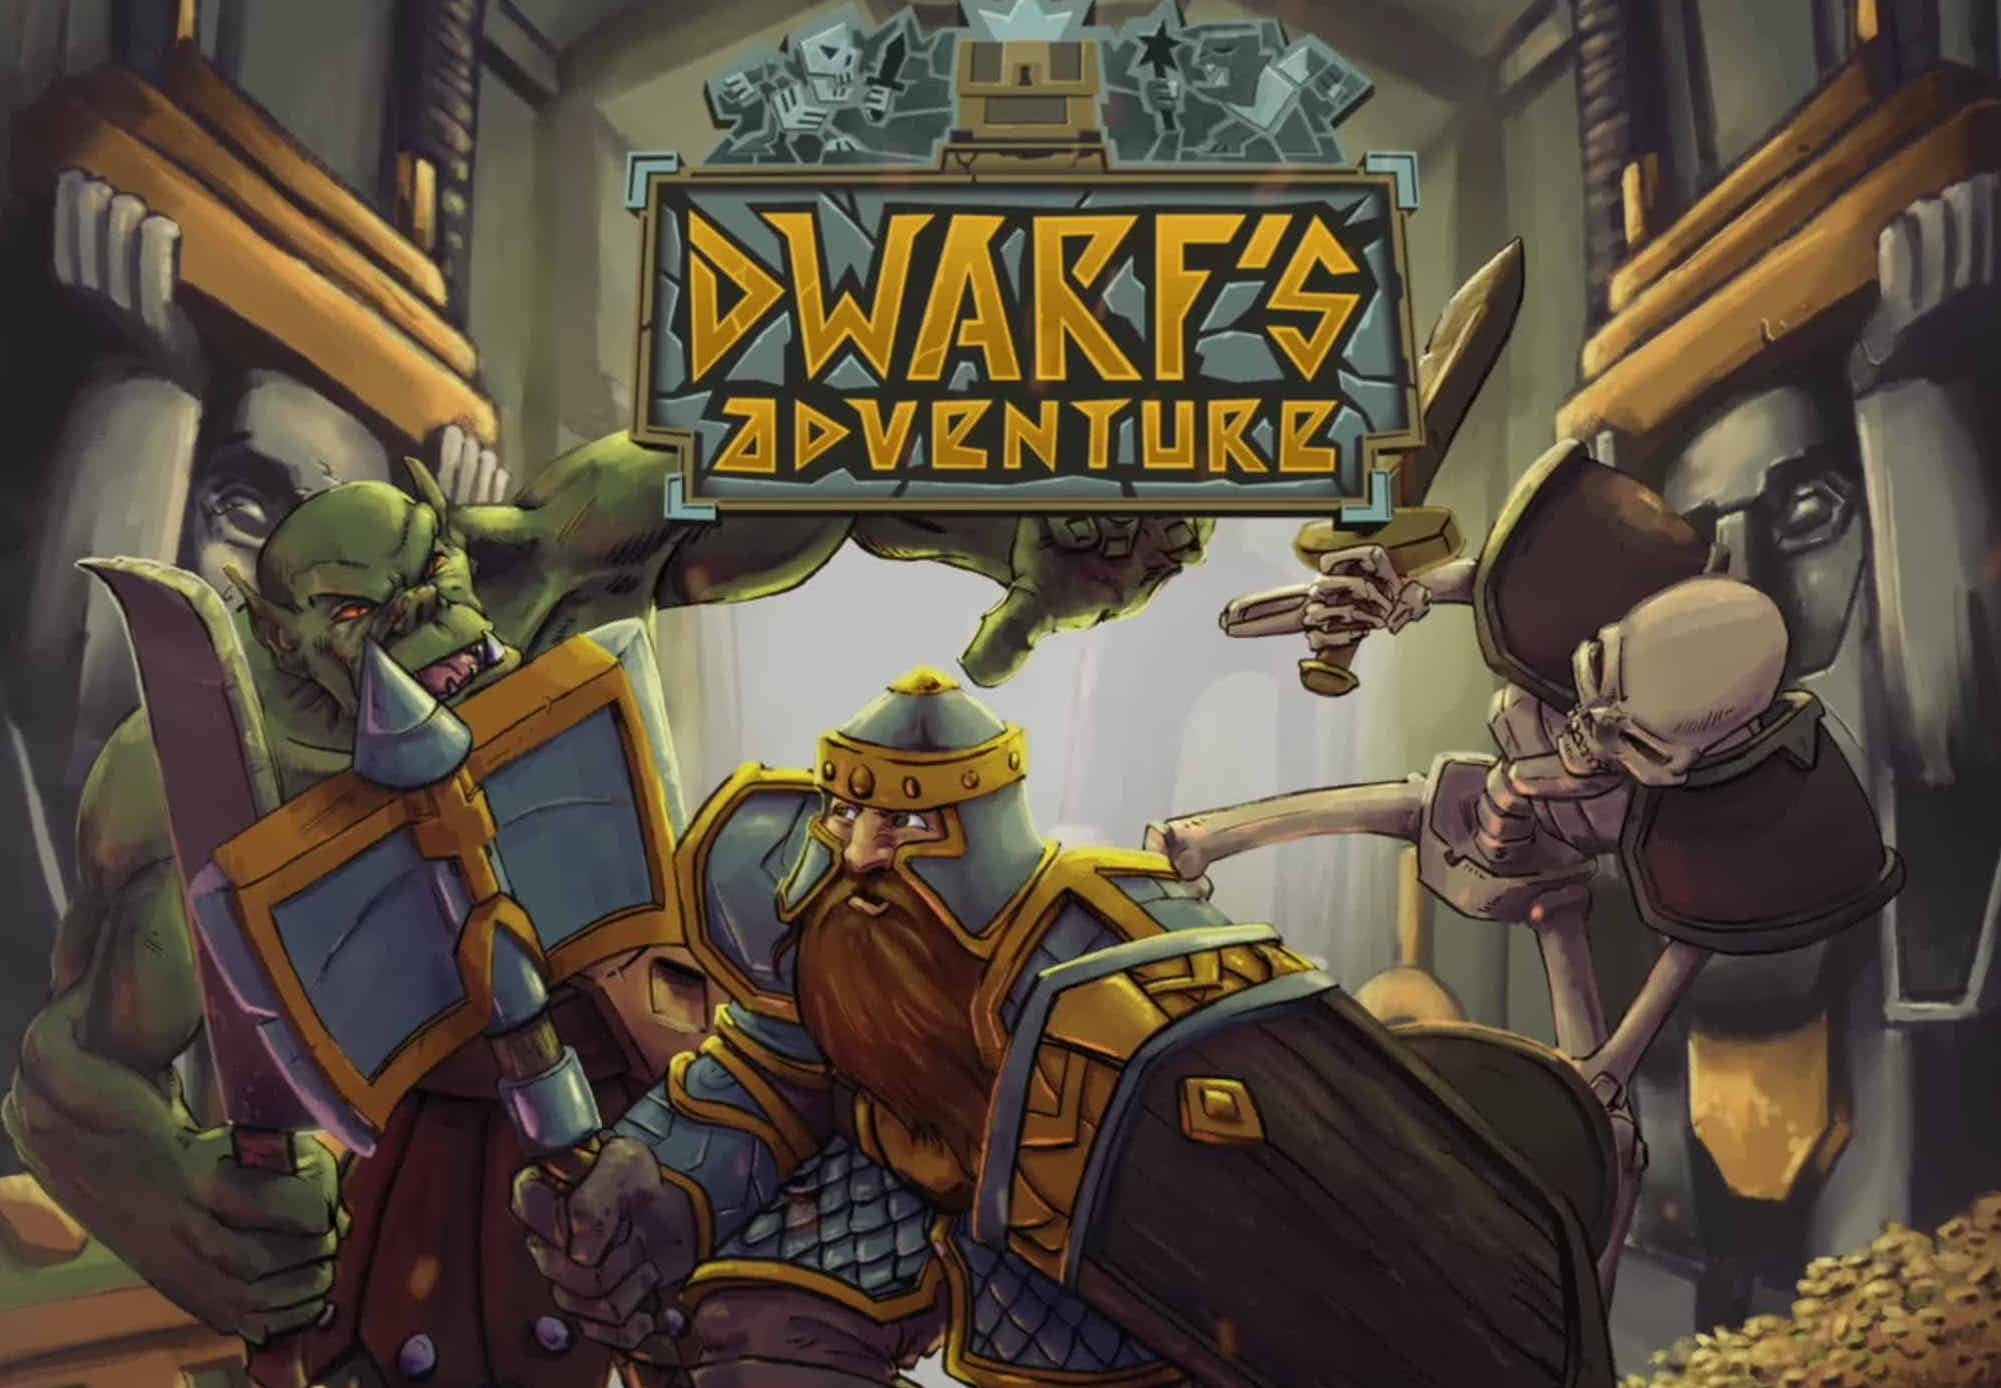 Dwarfs Dungeon game. Dwarf Adventurer. Cartonfall Fortress. Подземелье вкусностей дворф. Dwarfs adventure